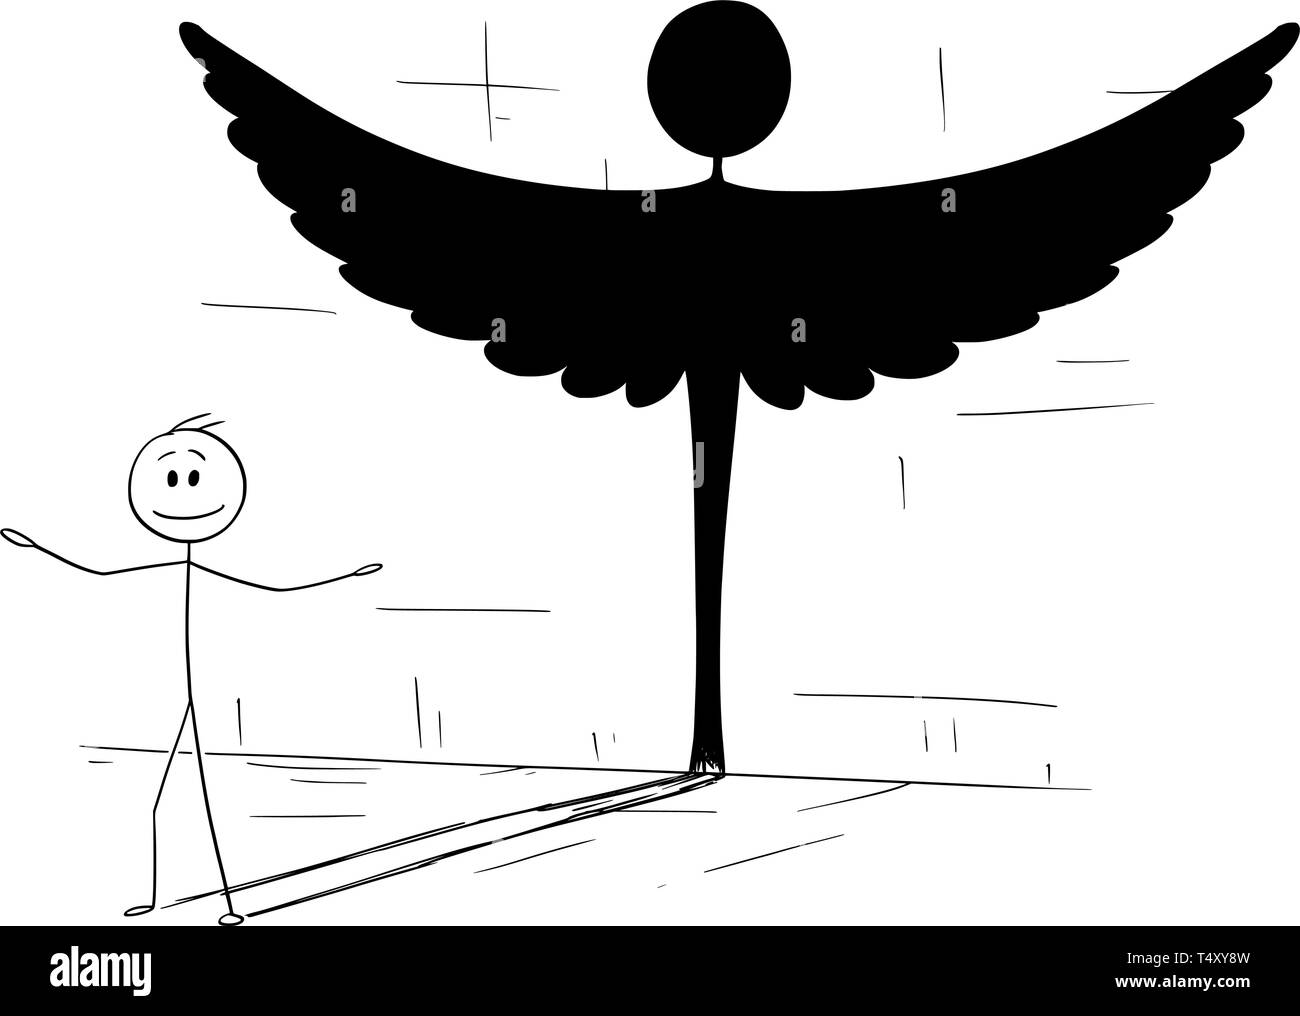 Cartoon stick figura disegno illustrazione concettuale di un buon uomo o persona ombra di colata in forma di angelo. Metafora o la vera personalità nascosti all'interno. Illustrazione Vettoriale